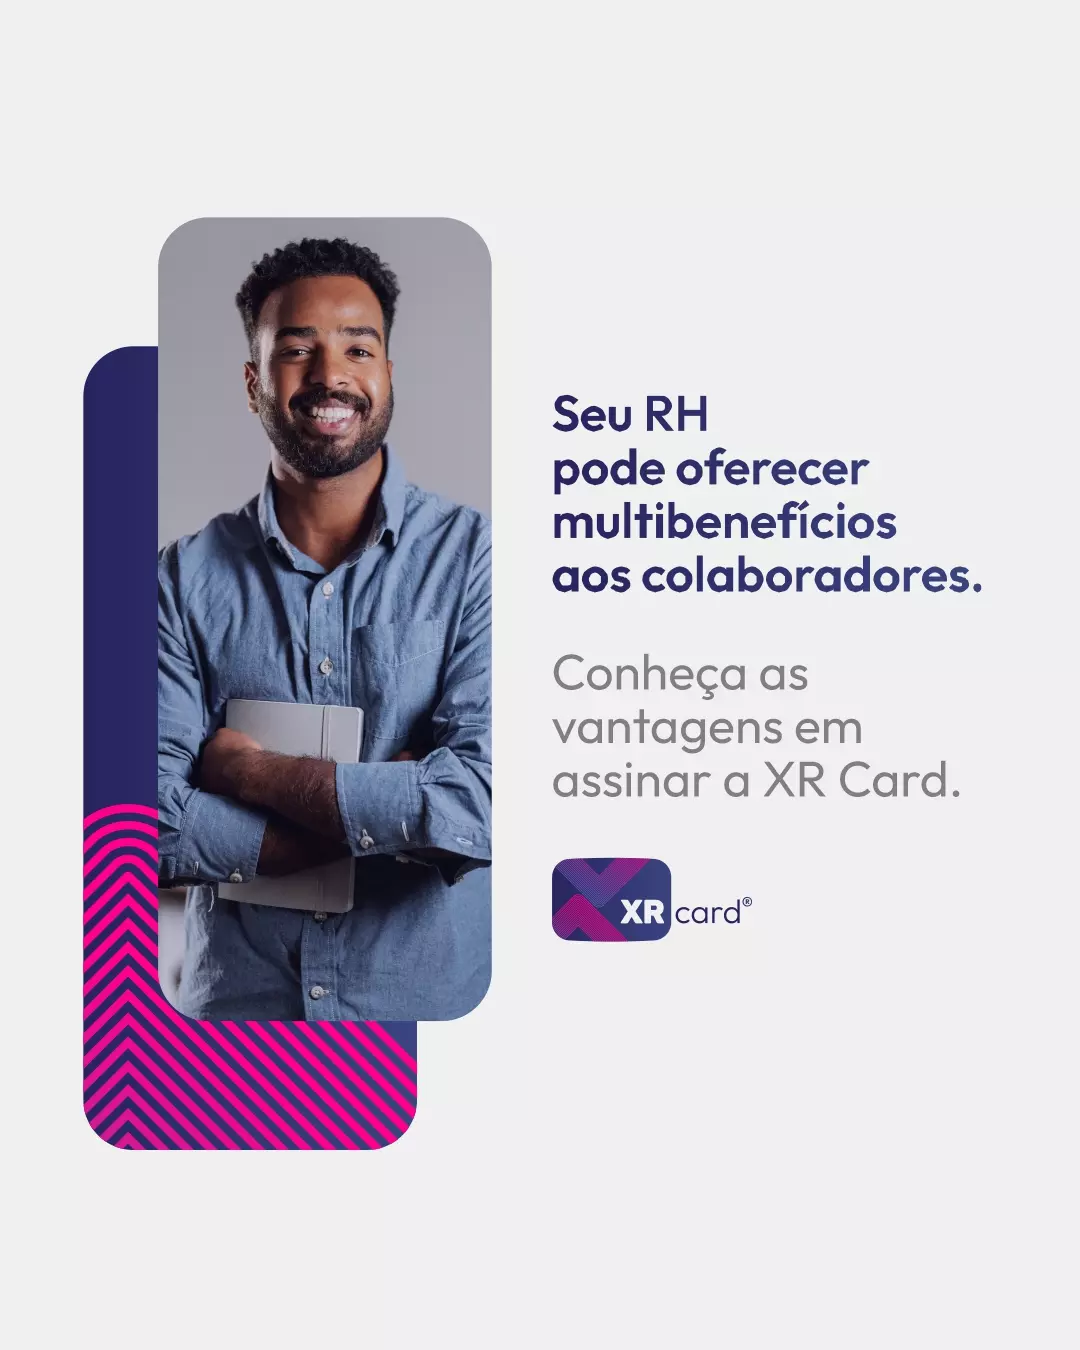 XR Card® - Rede de Vantagens e Multibenefícios. Economize nas compras diárias e conte com Assistências e Telemedicina SulAmérica.